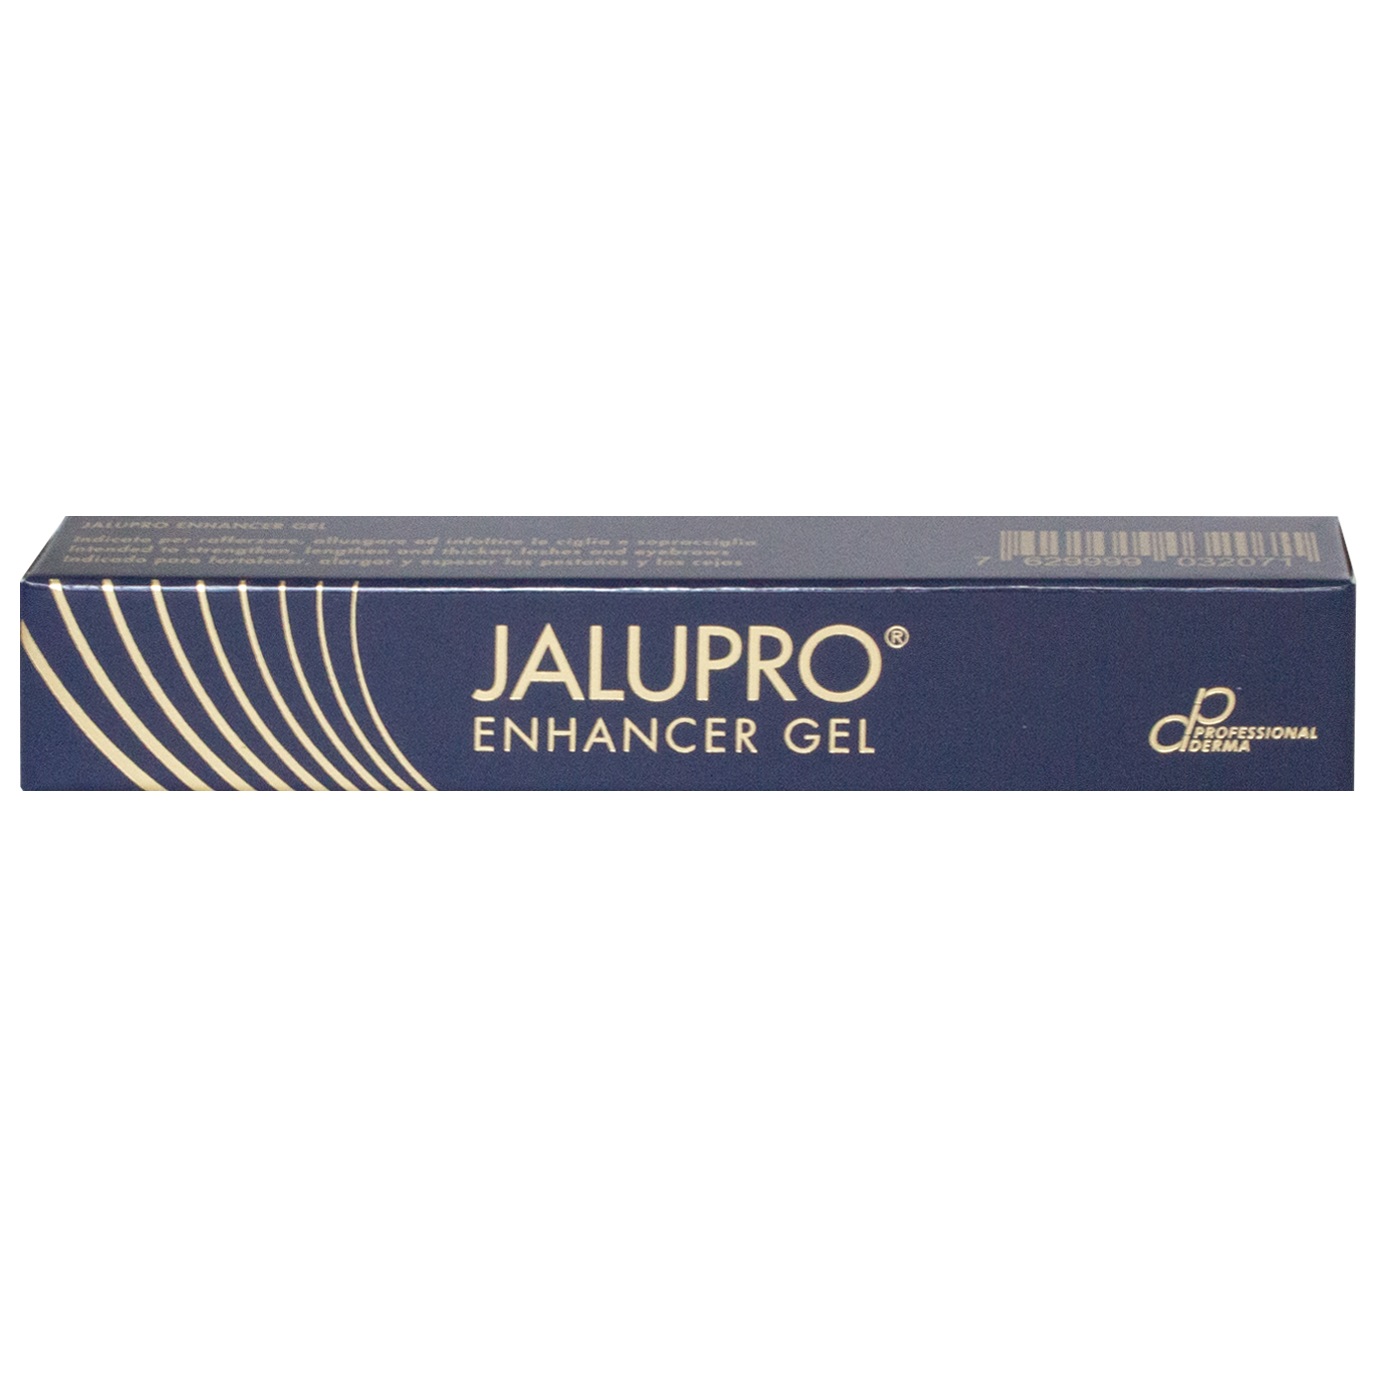 Jalupro Enhancer Gel front